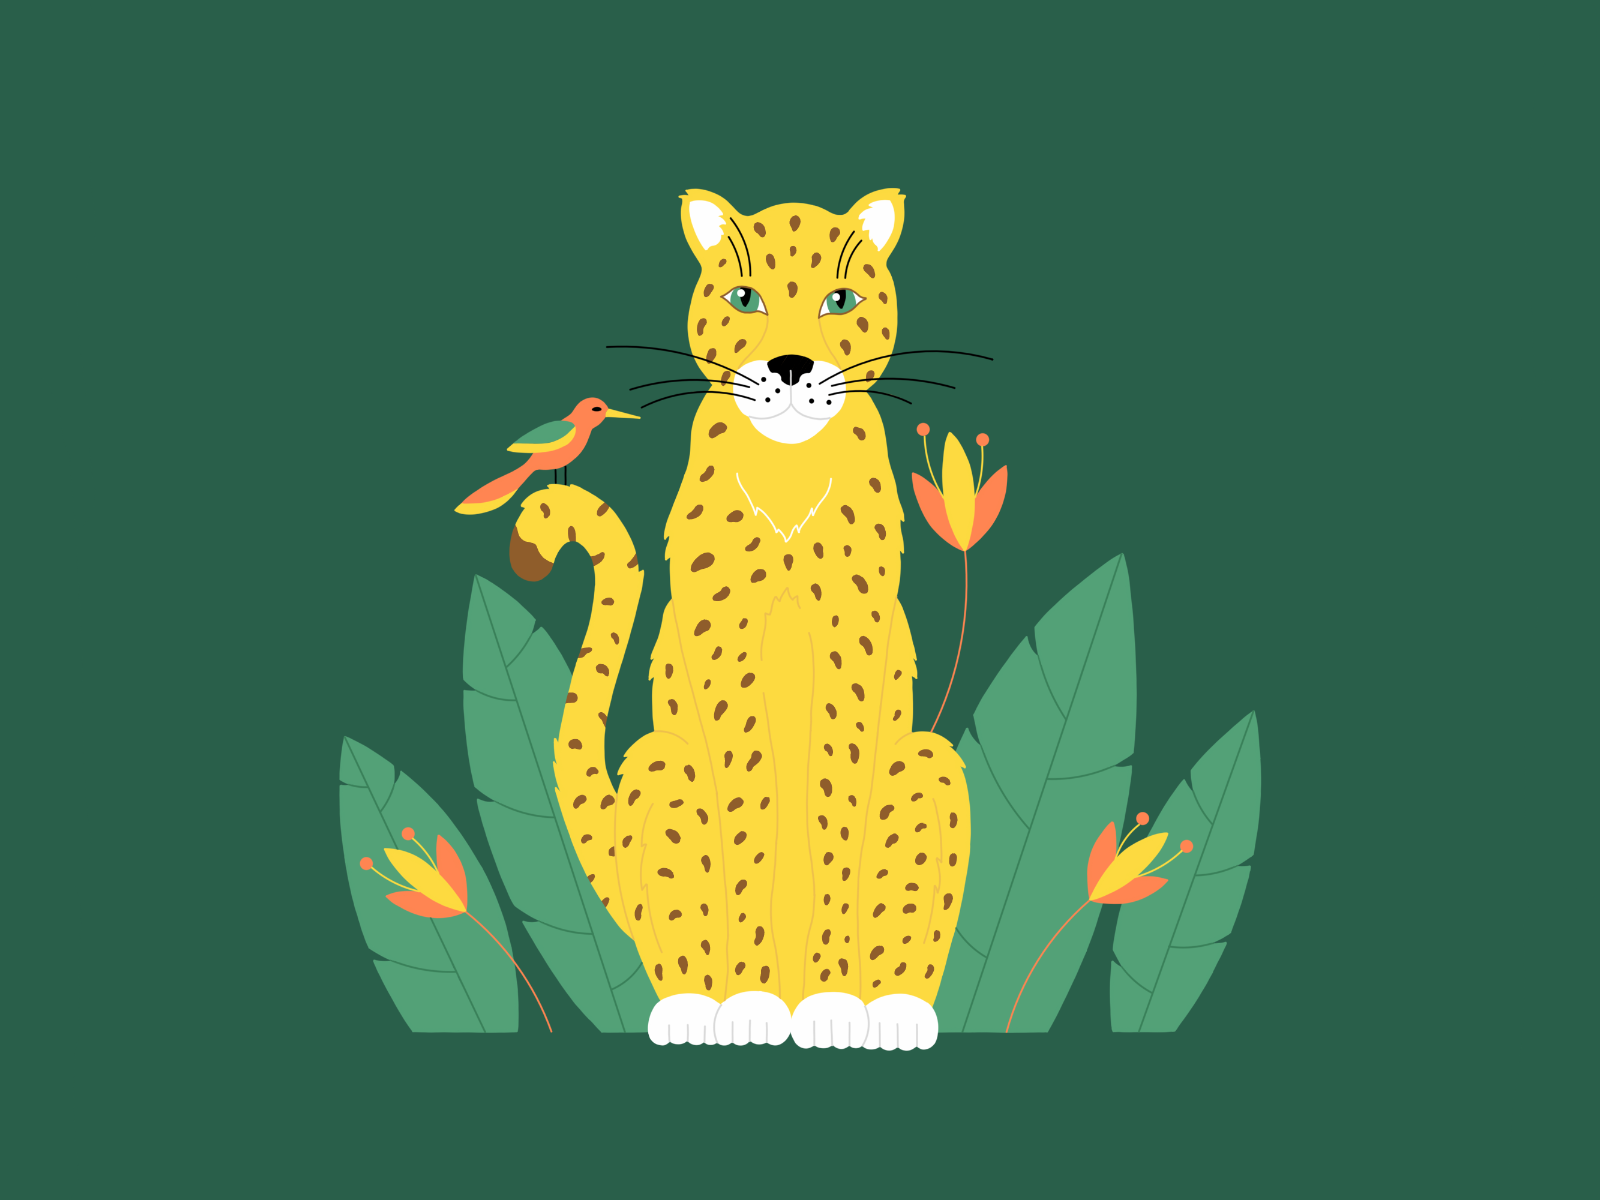 Леопард adobe illustrator flat infinite painter африка векторные животные векторный леопард векторный стиль джунгли животные иллюстрация красочный леопард леопард в векторе леопард в джунглях минимализм плоский стиль сафари яркий